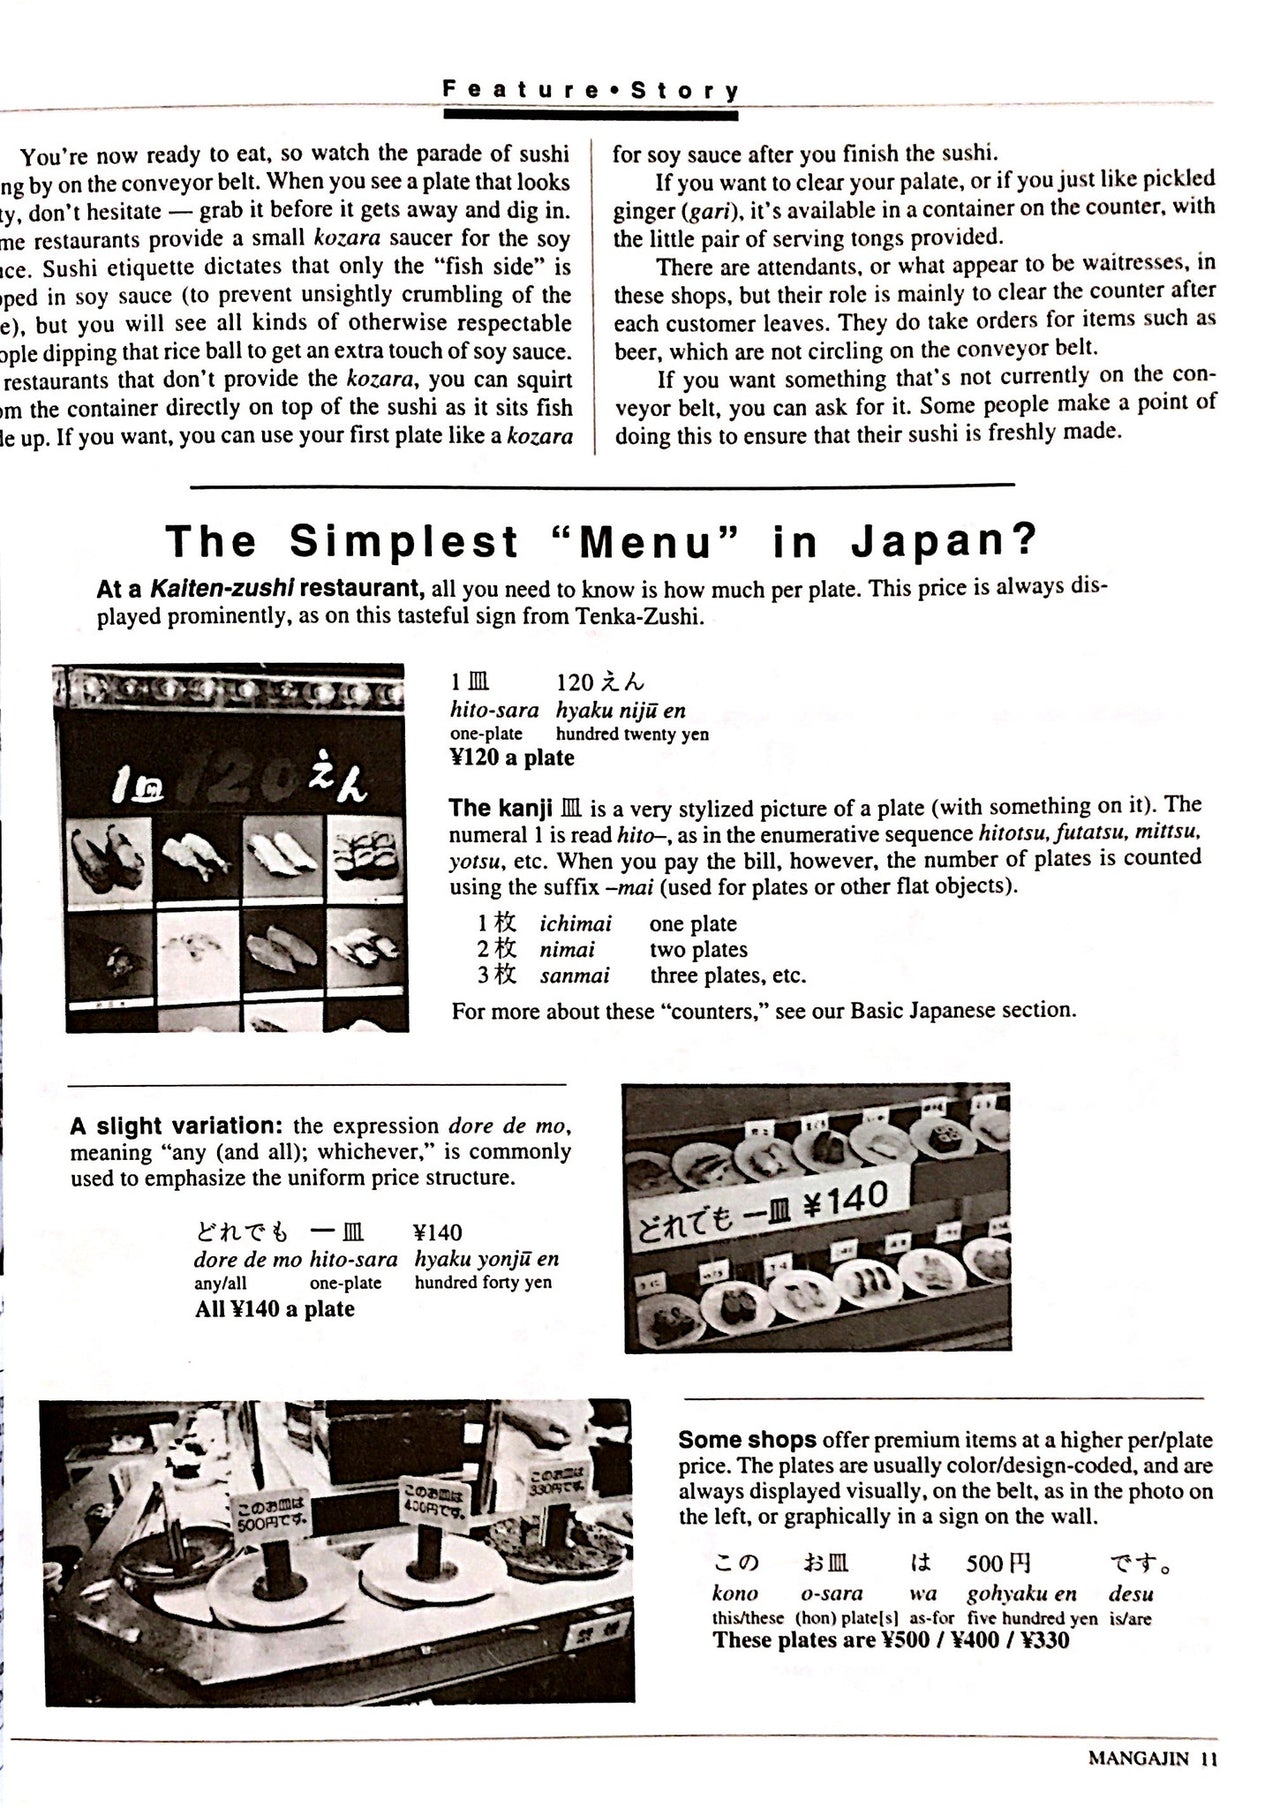 Mangajin 18 - The Japan Shop